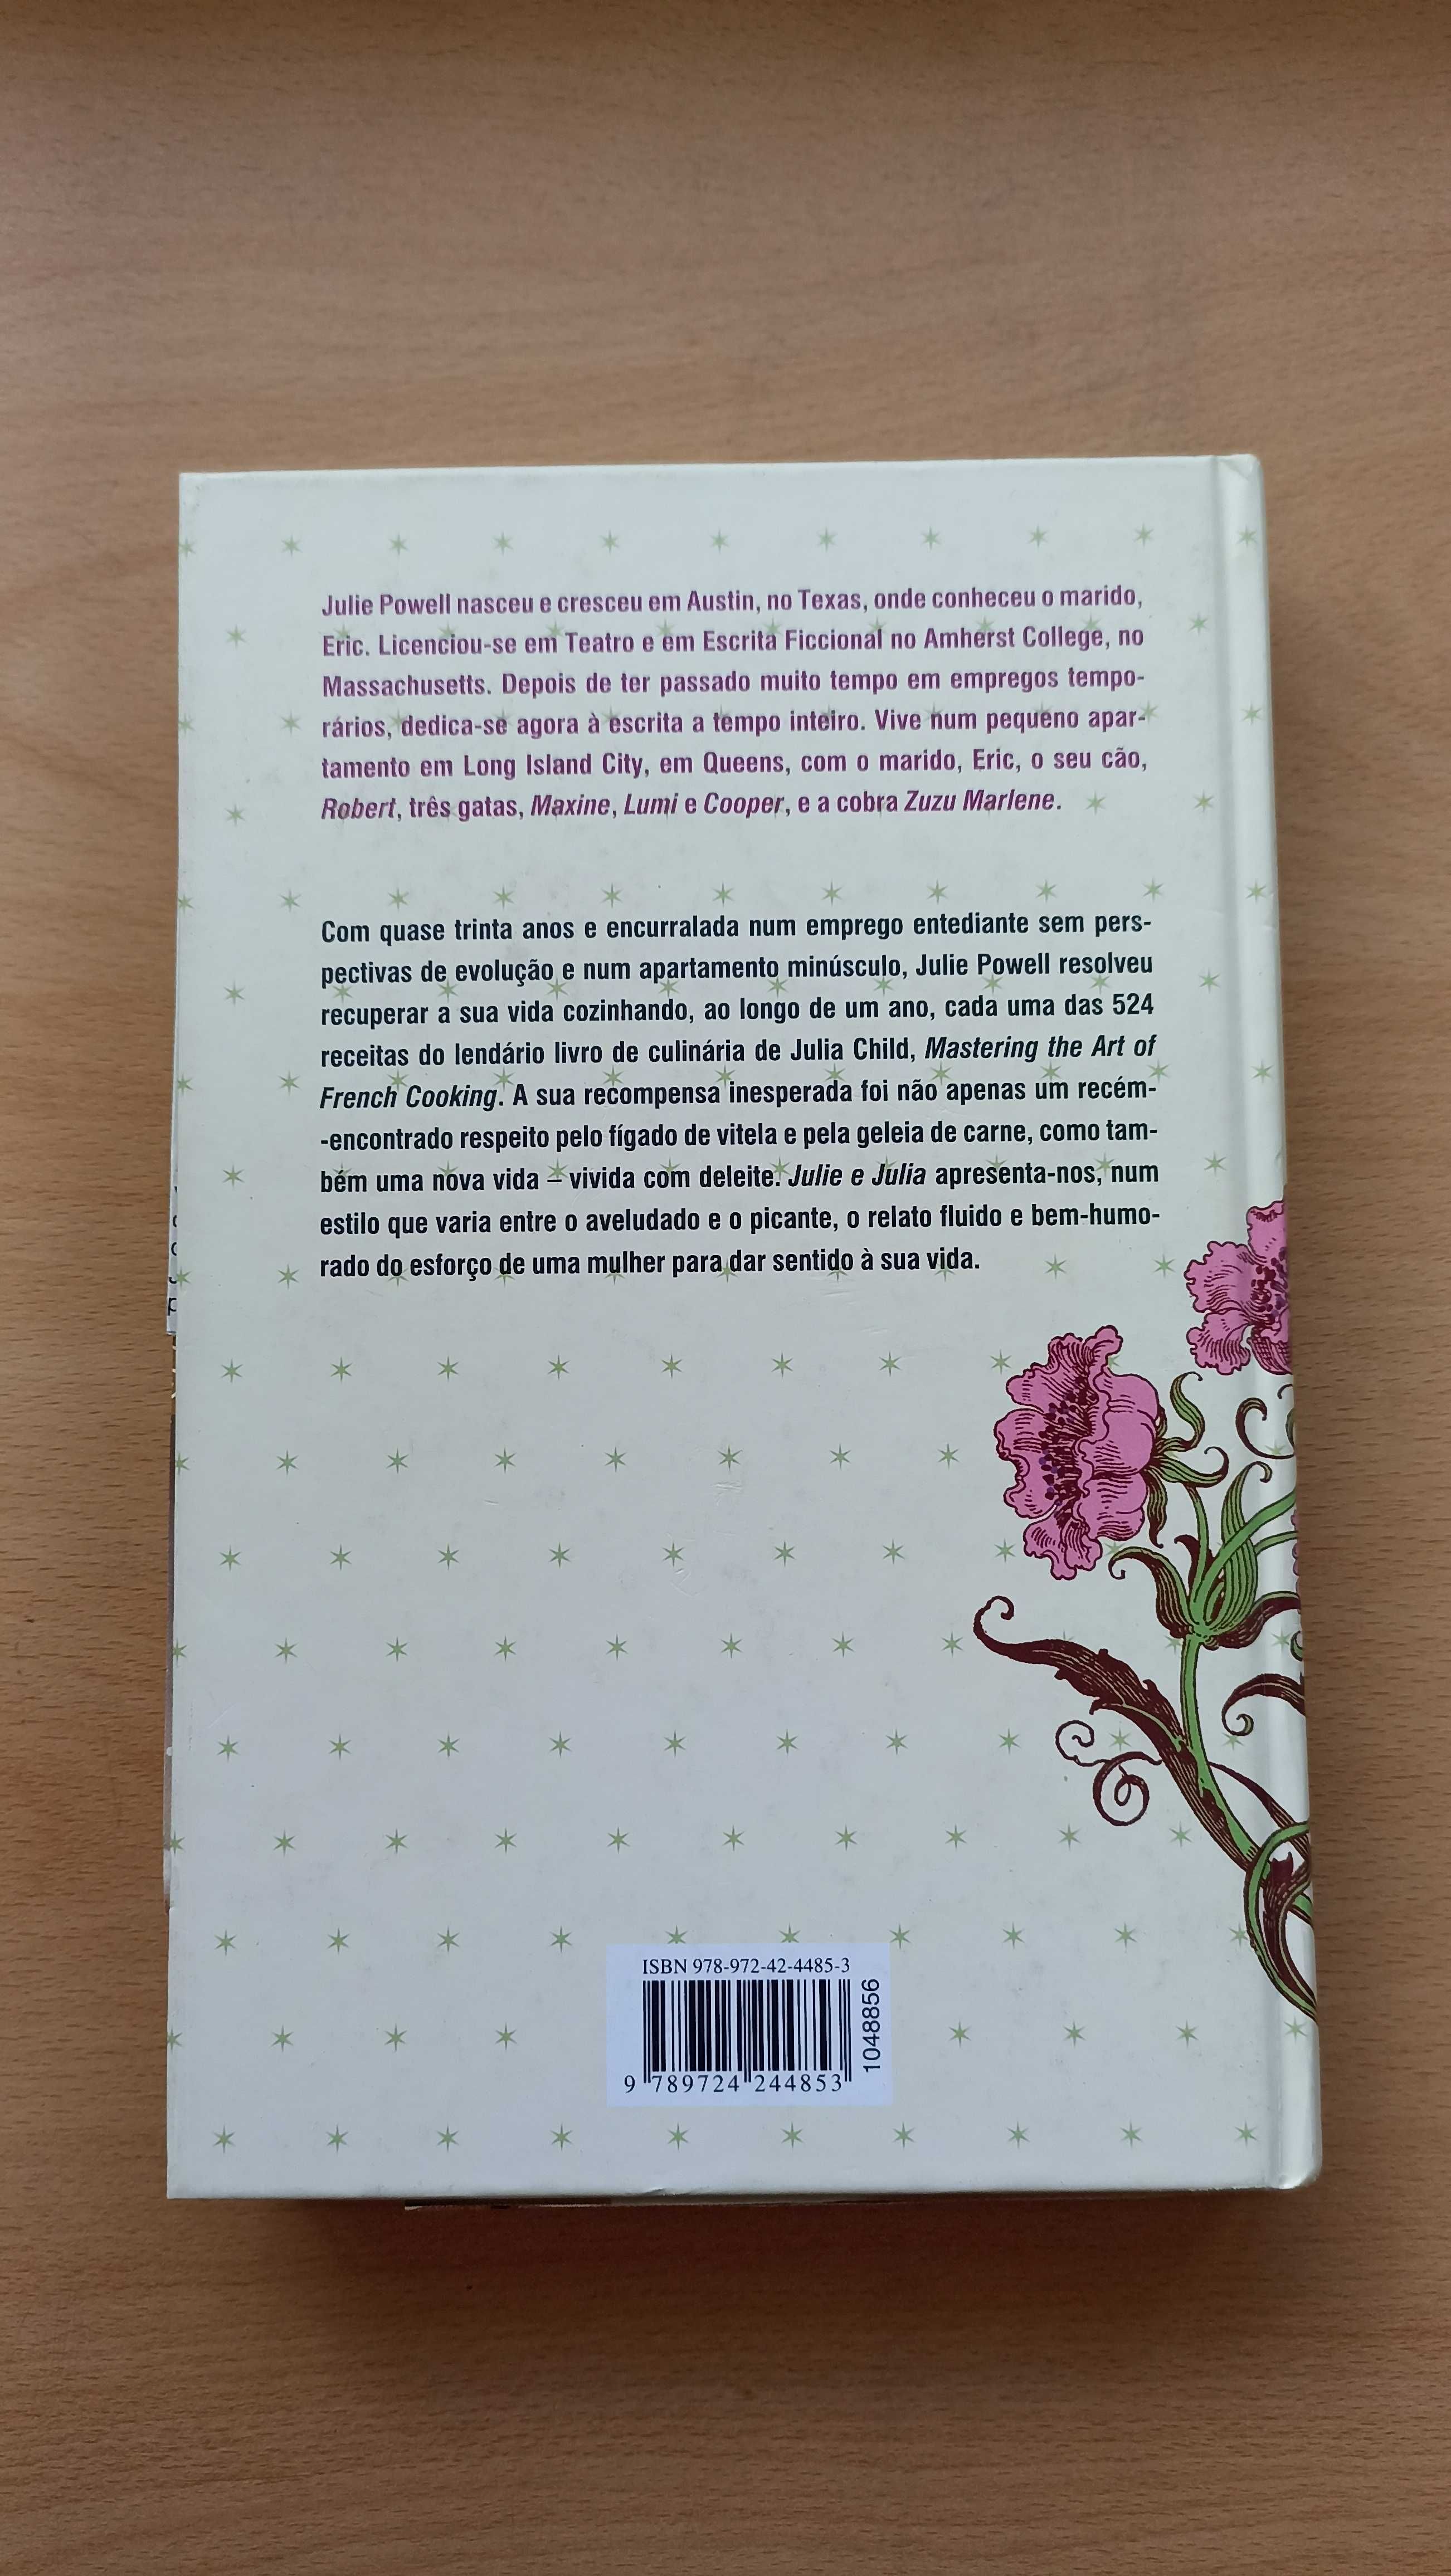 Livro (capa dura) "Julie & Julia" de Julie Pewell